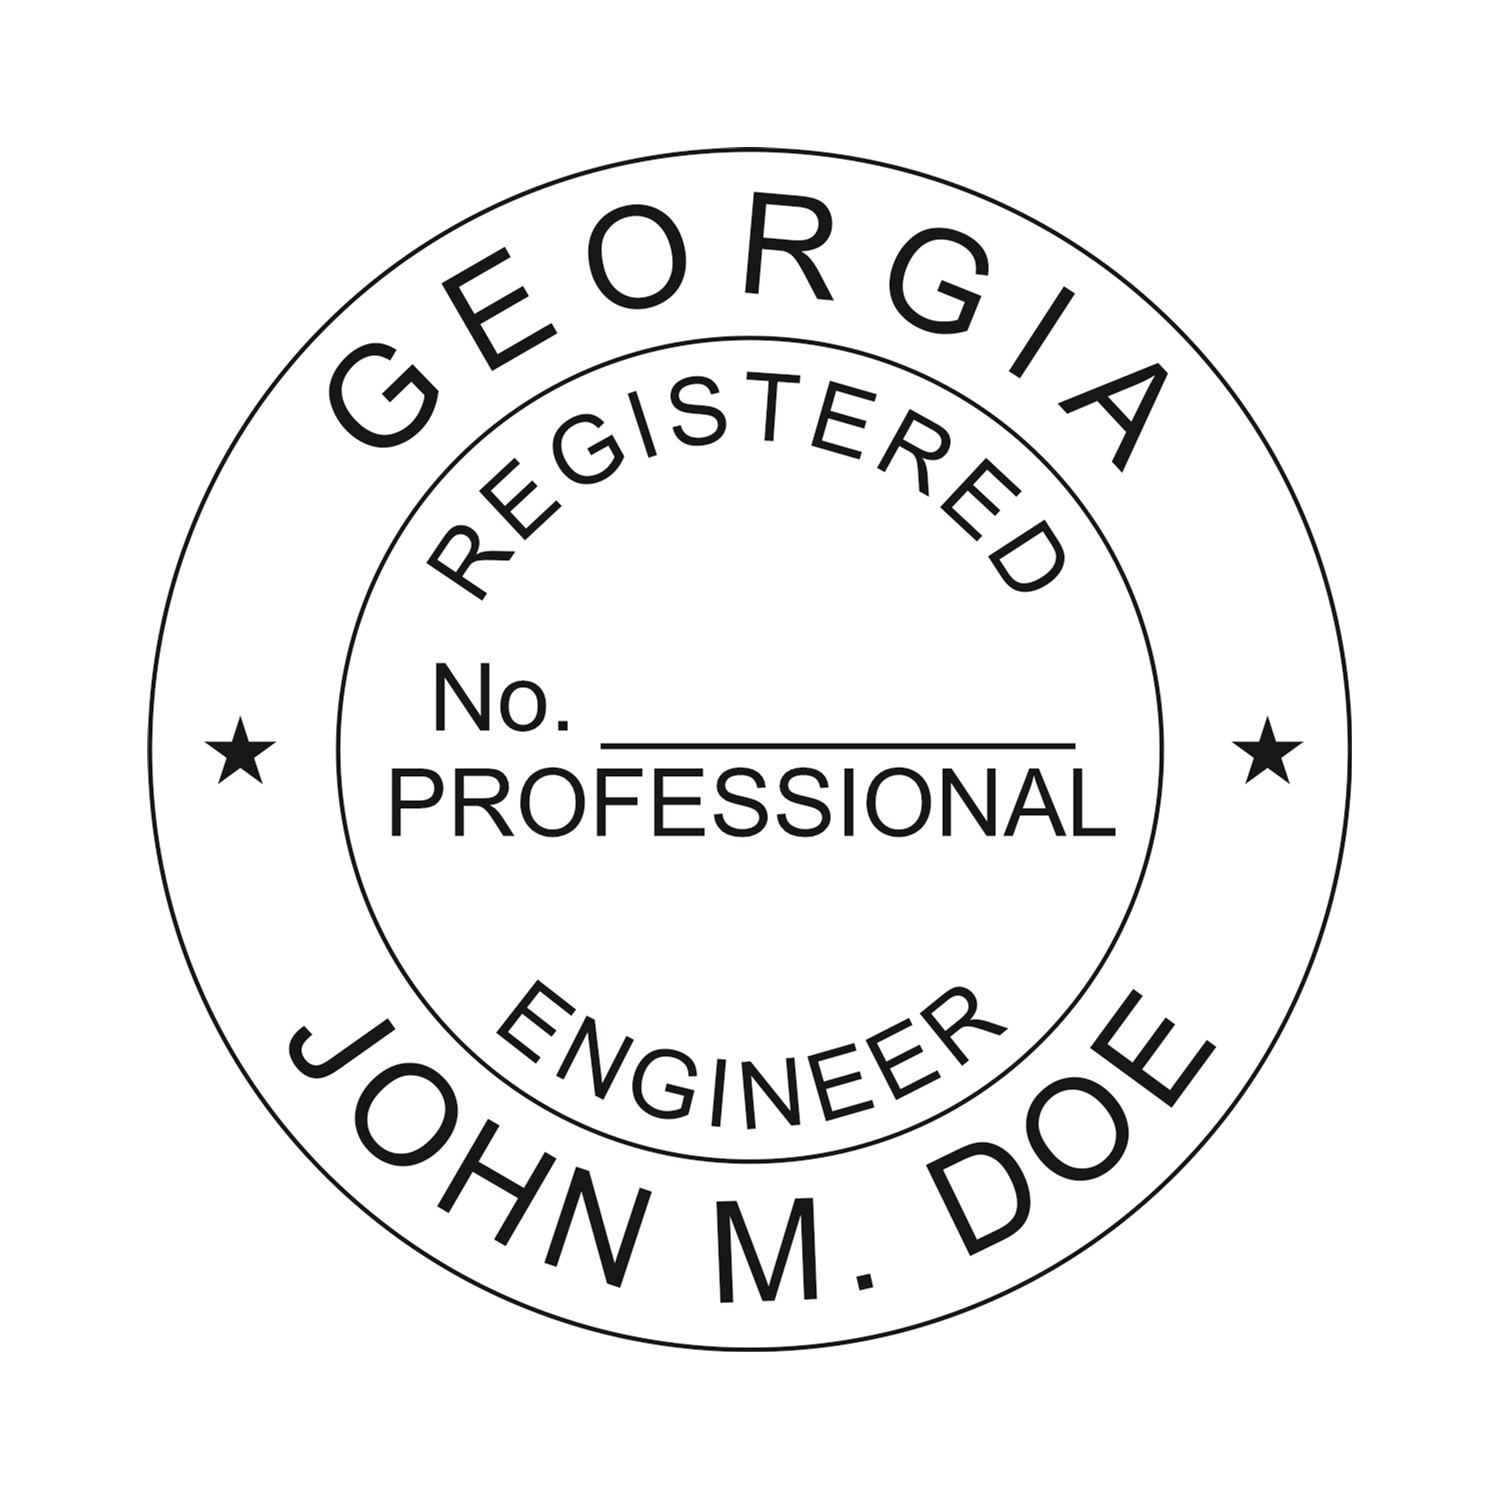 Engineer Seal - Pre Inked Stamp - Georgia